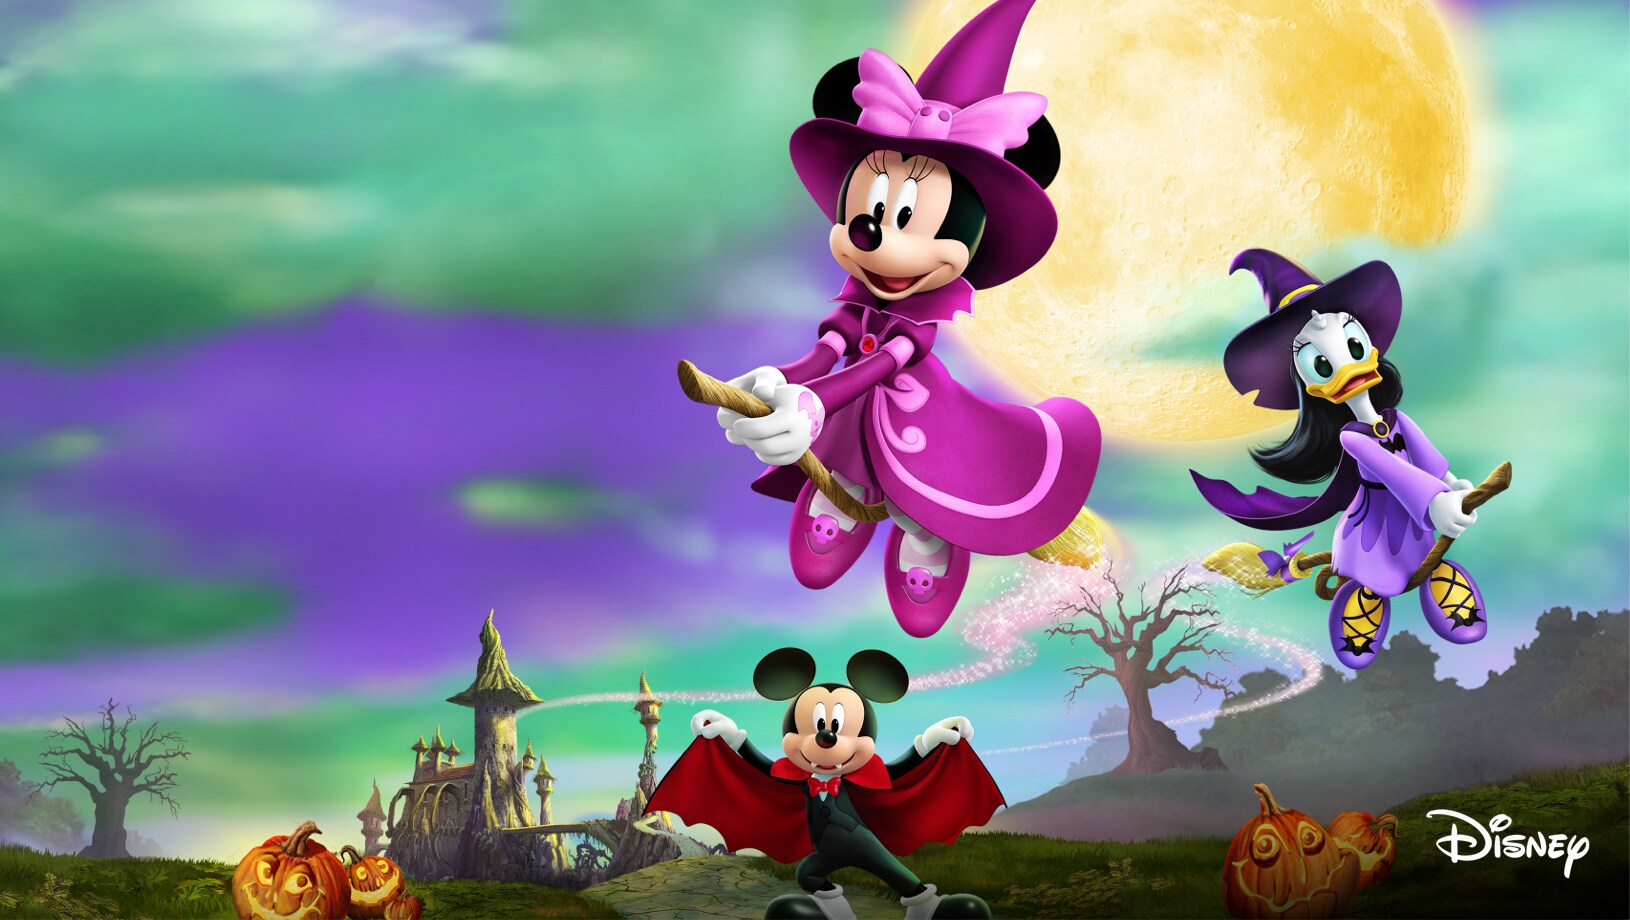 🎃 5 FILMES da Disney pra assistir no Halloween 🎃, #filmes #disney #